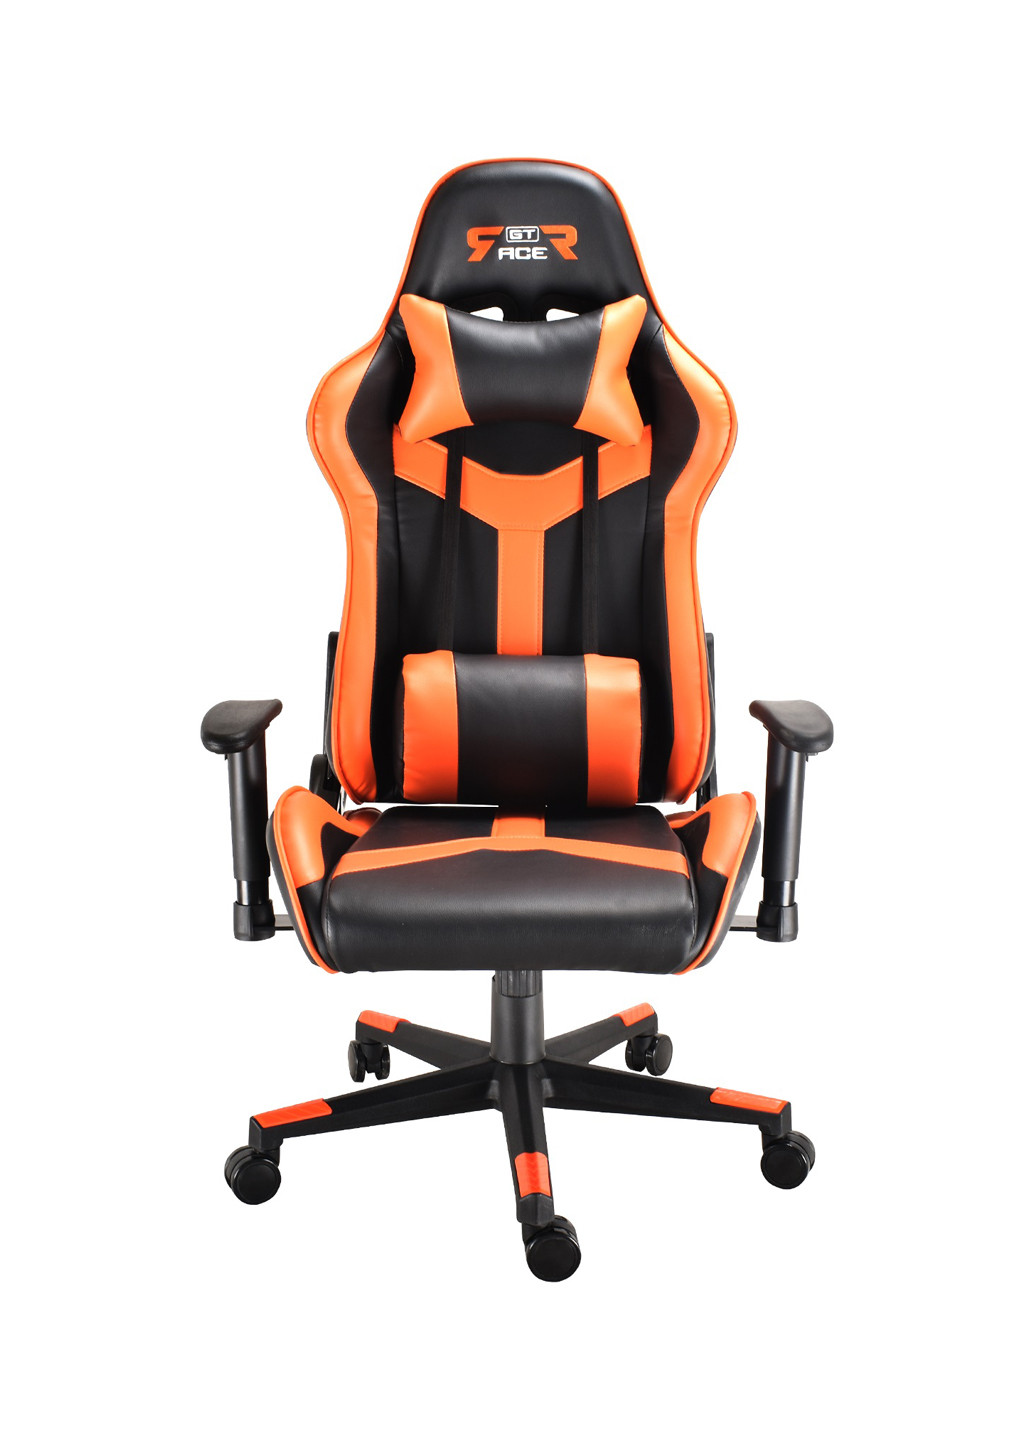 Кресло X-2527 Black/Orange GT Racer кресло gt racer x-2527 black/orange (143068504)